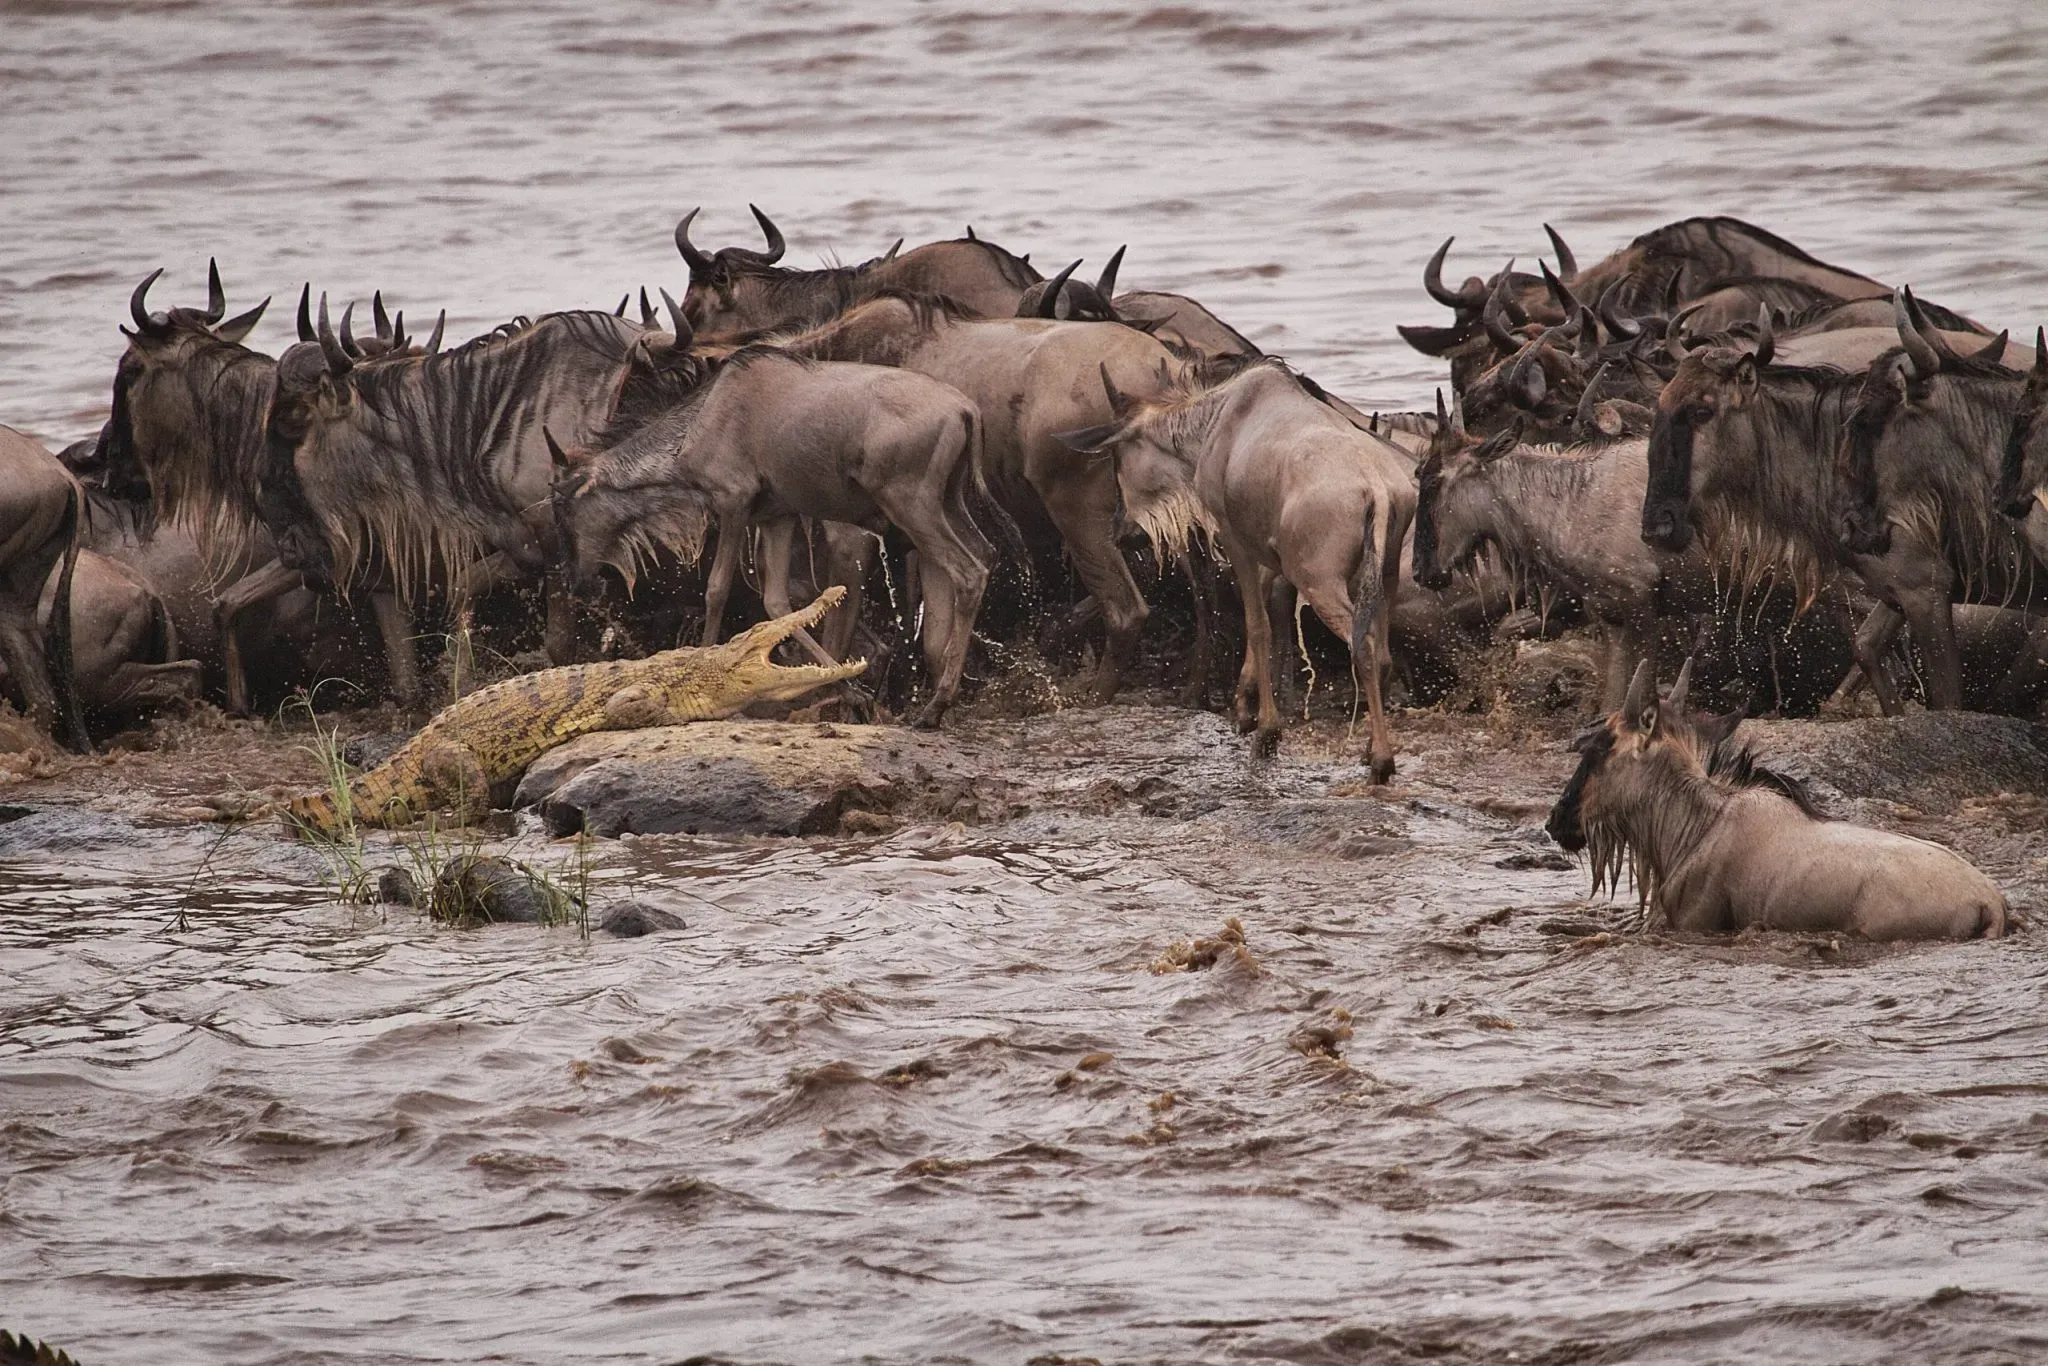 Great migration maasai mara - wildebeest & crocodiles